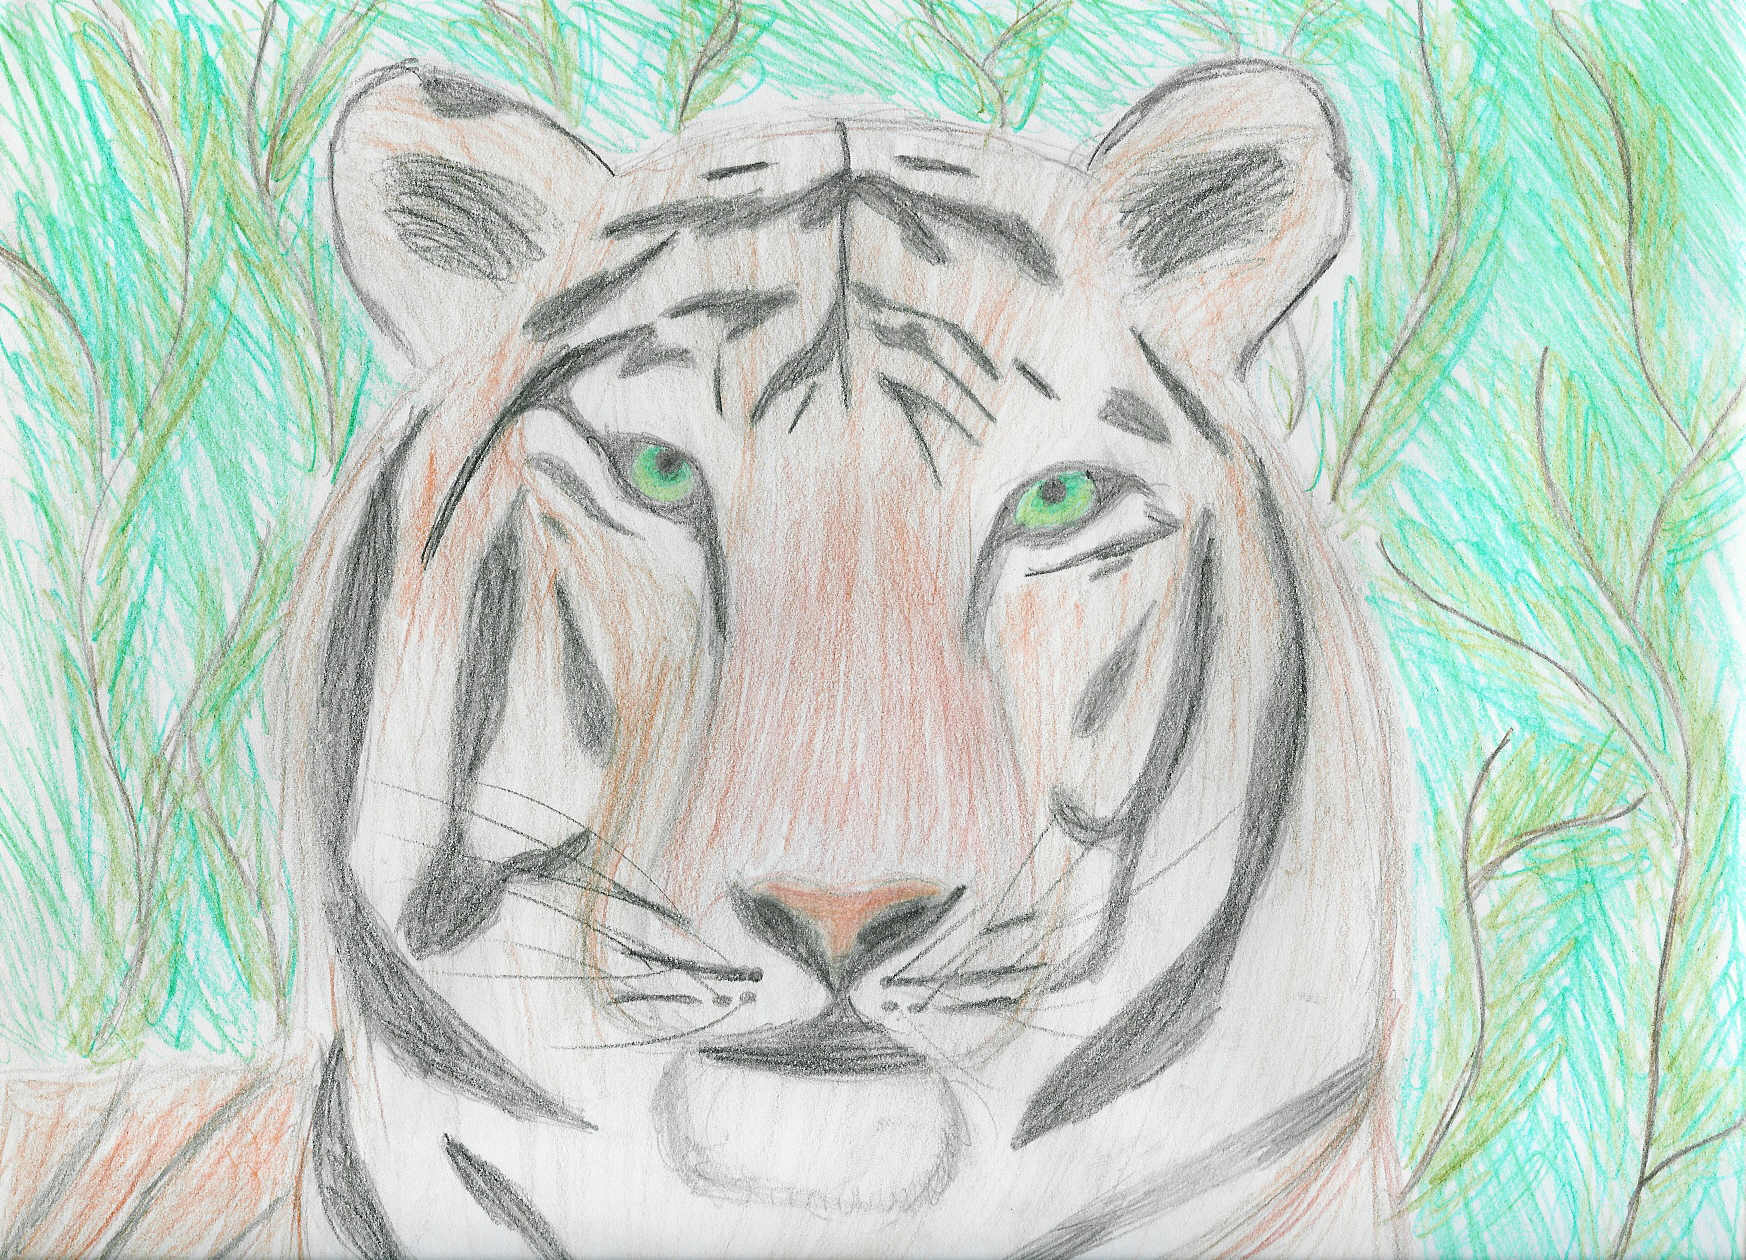 Tigerr by chosen0ne